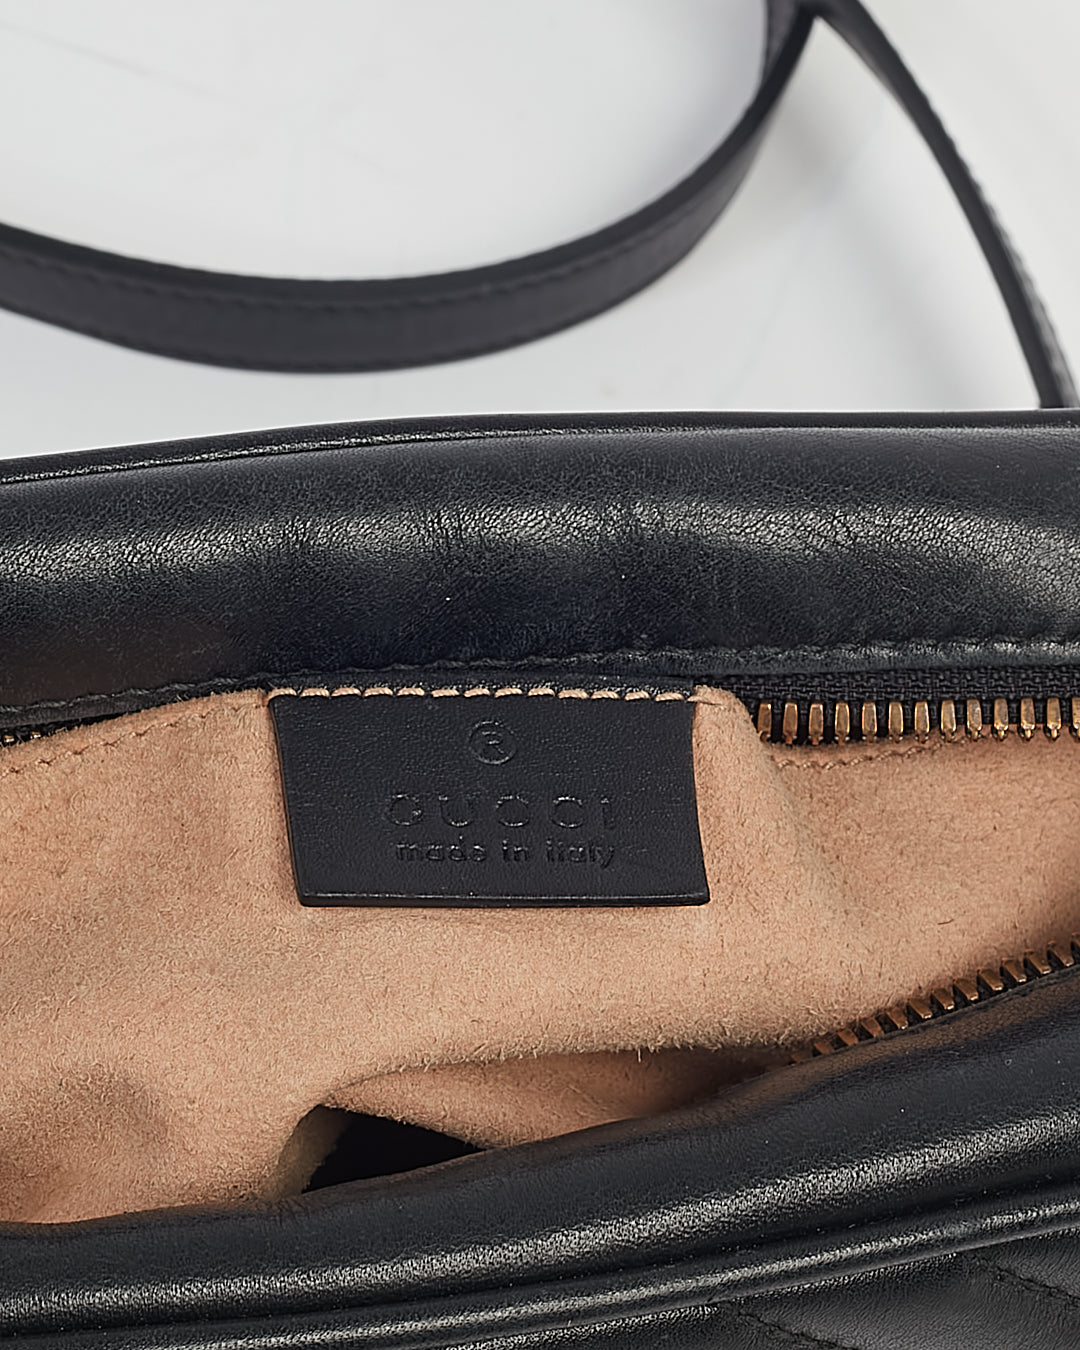 Petit sac photo Gucci en cuir noir Matelasse GG Marmont